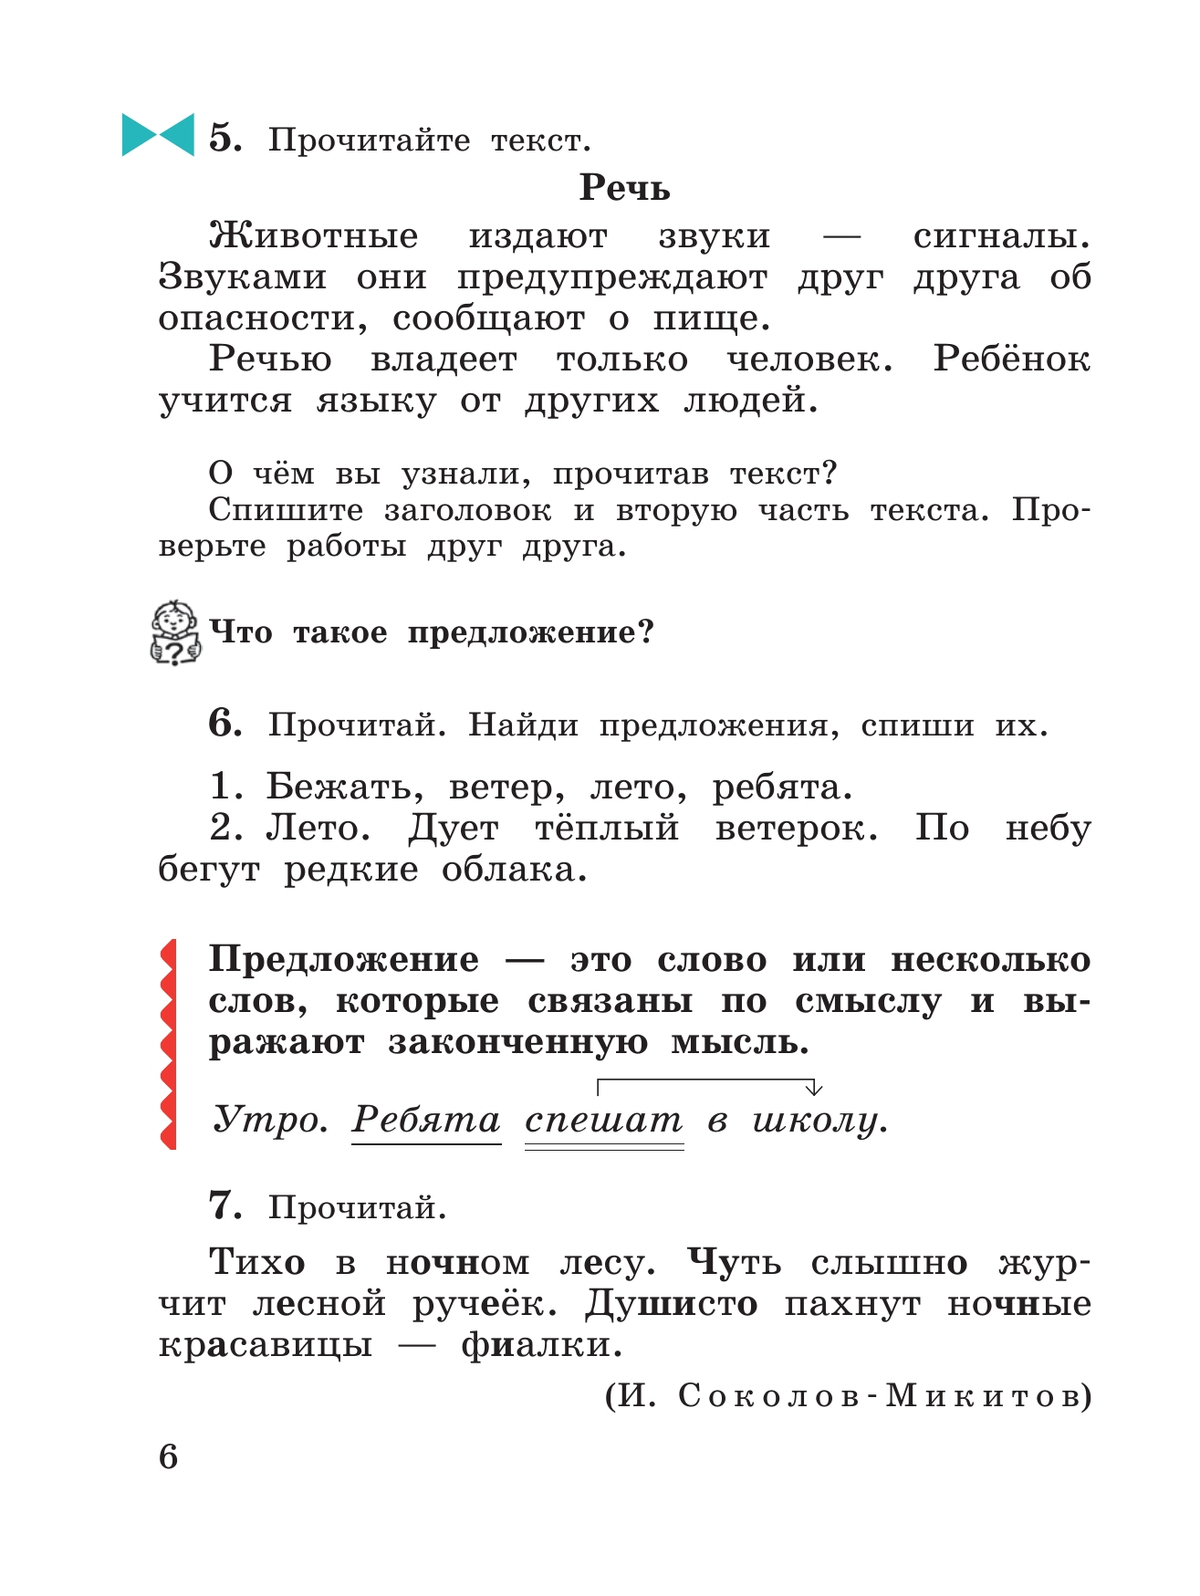 Русский язык. 3 класс. Учебник. В 2 ч. Часть 1 6